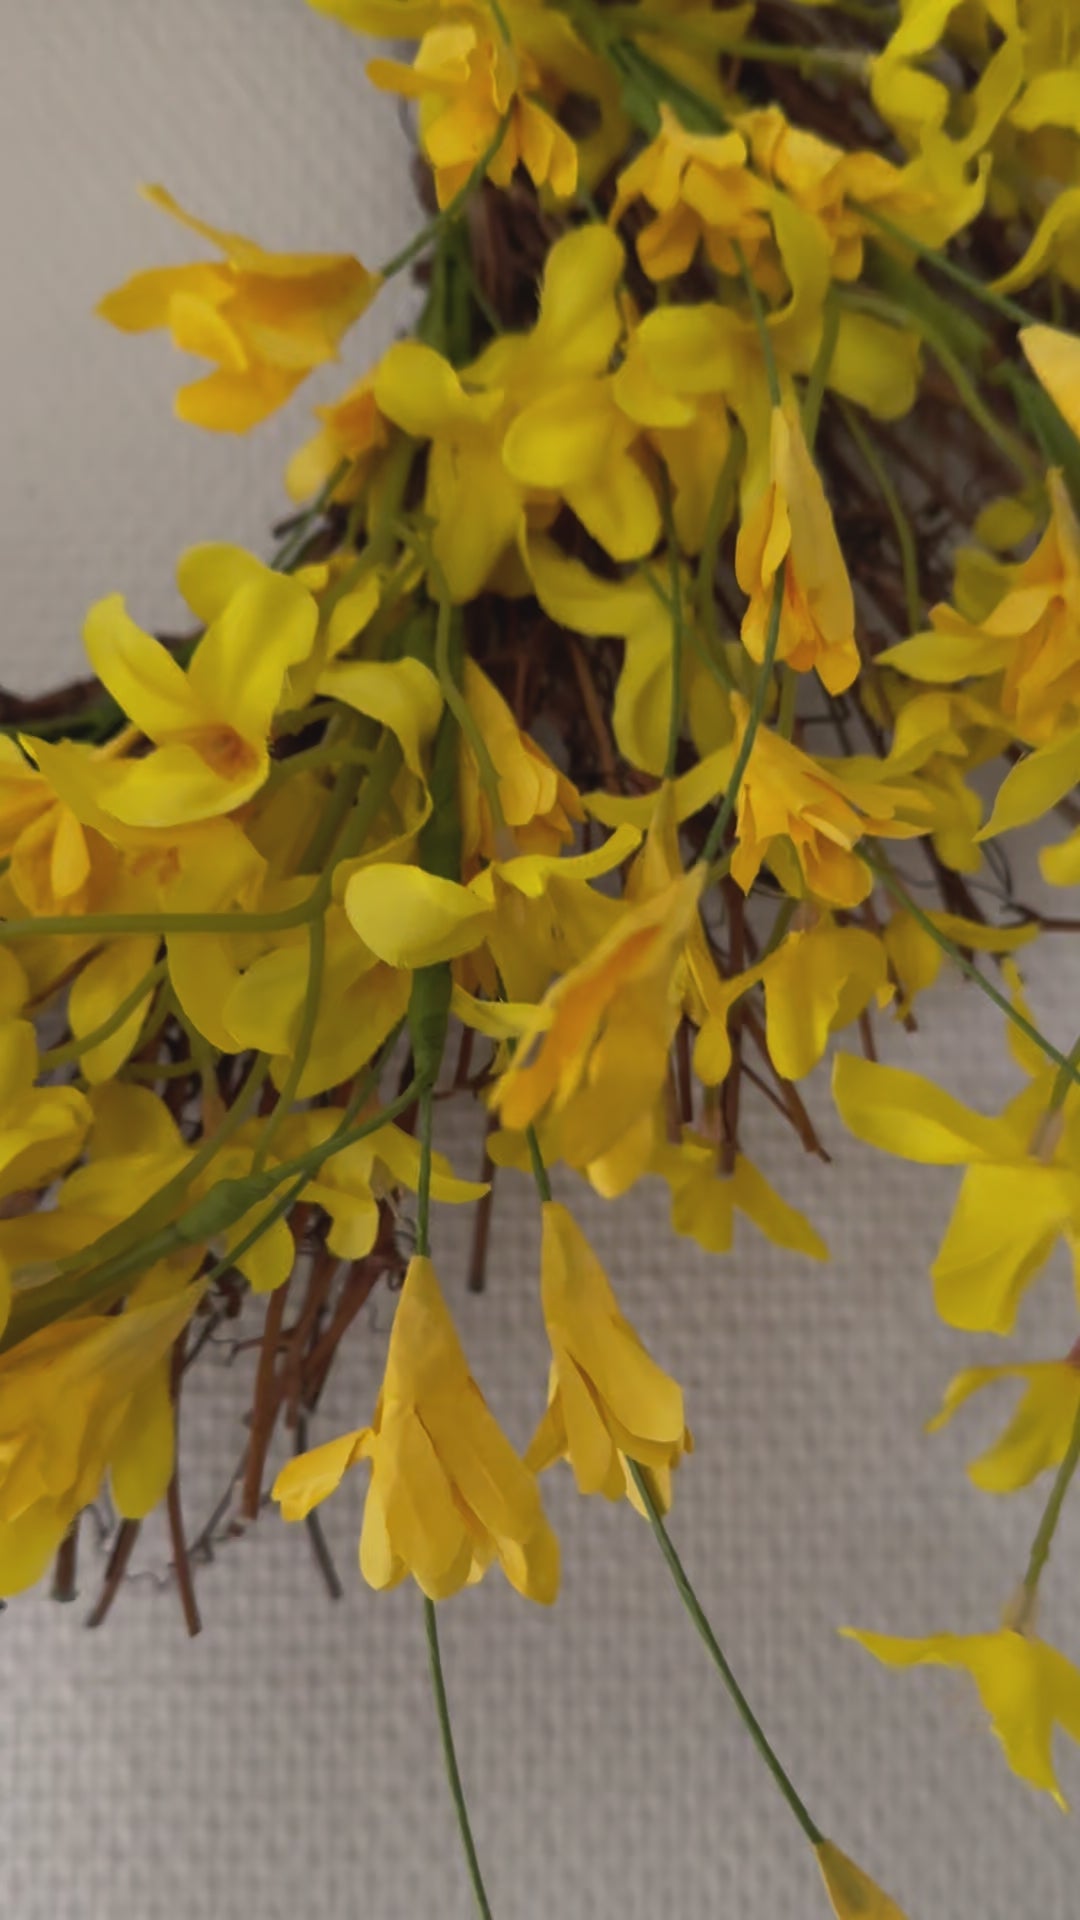 Yellow Forsythia Spring Wreath